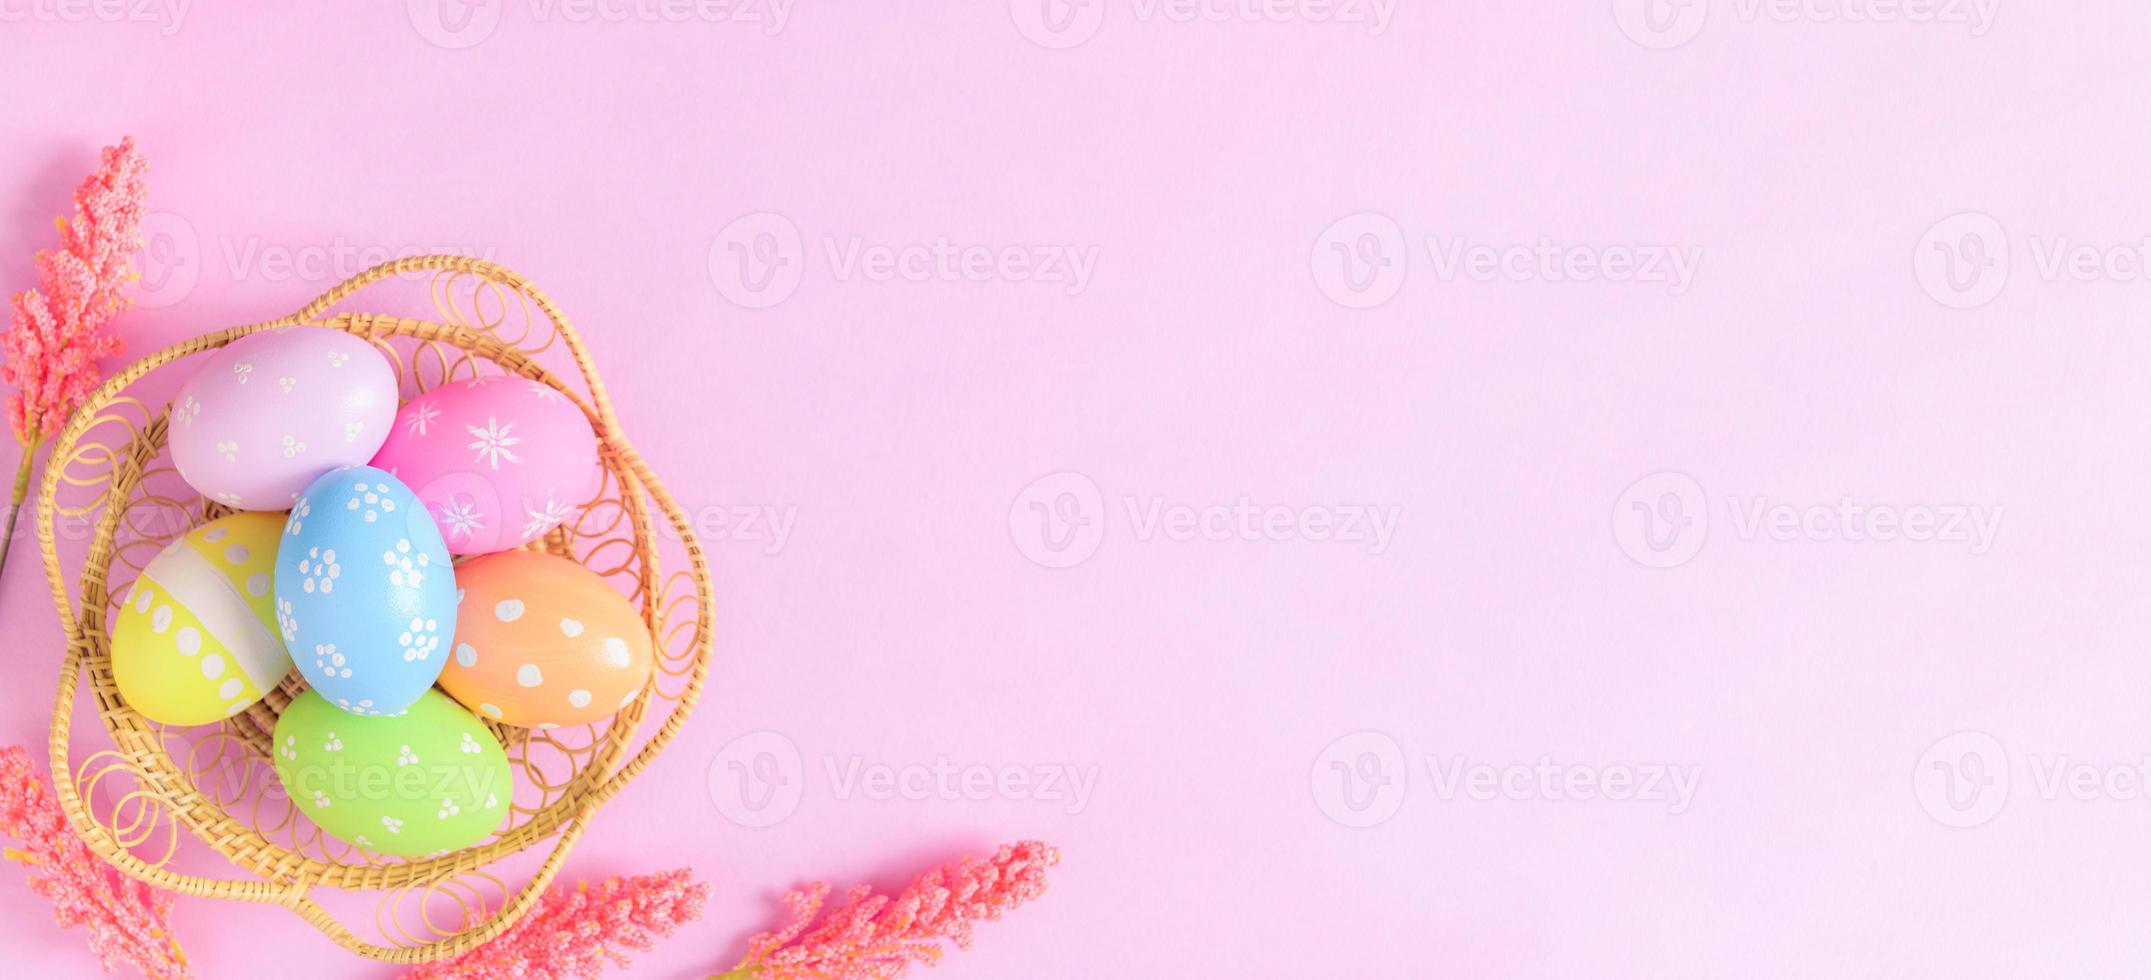 Lycklig påsk Semester hälsning kort begrepp. färgrik påsk ägg och vår blommor på pastell rosa bakgrund. platt lägga, topp se, kopia Plats. foto